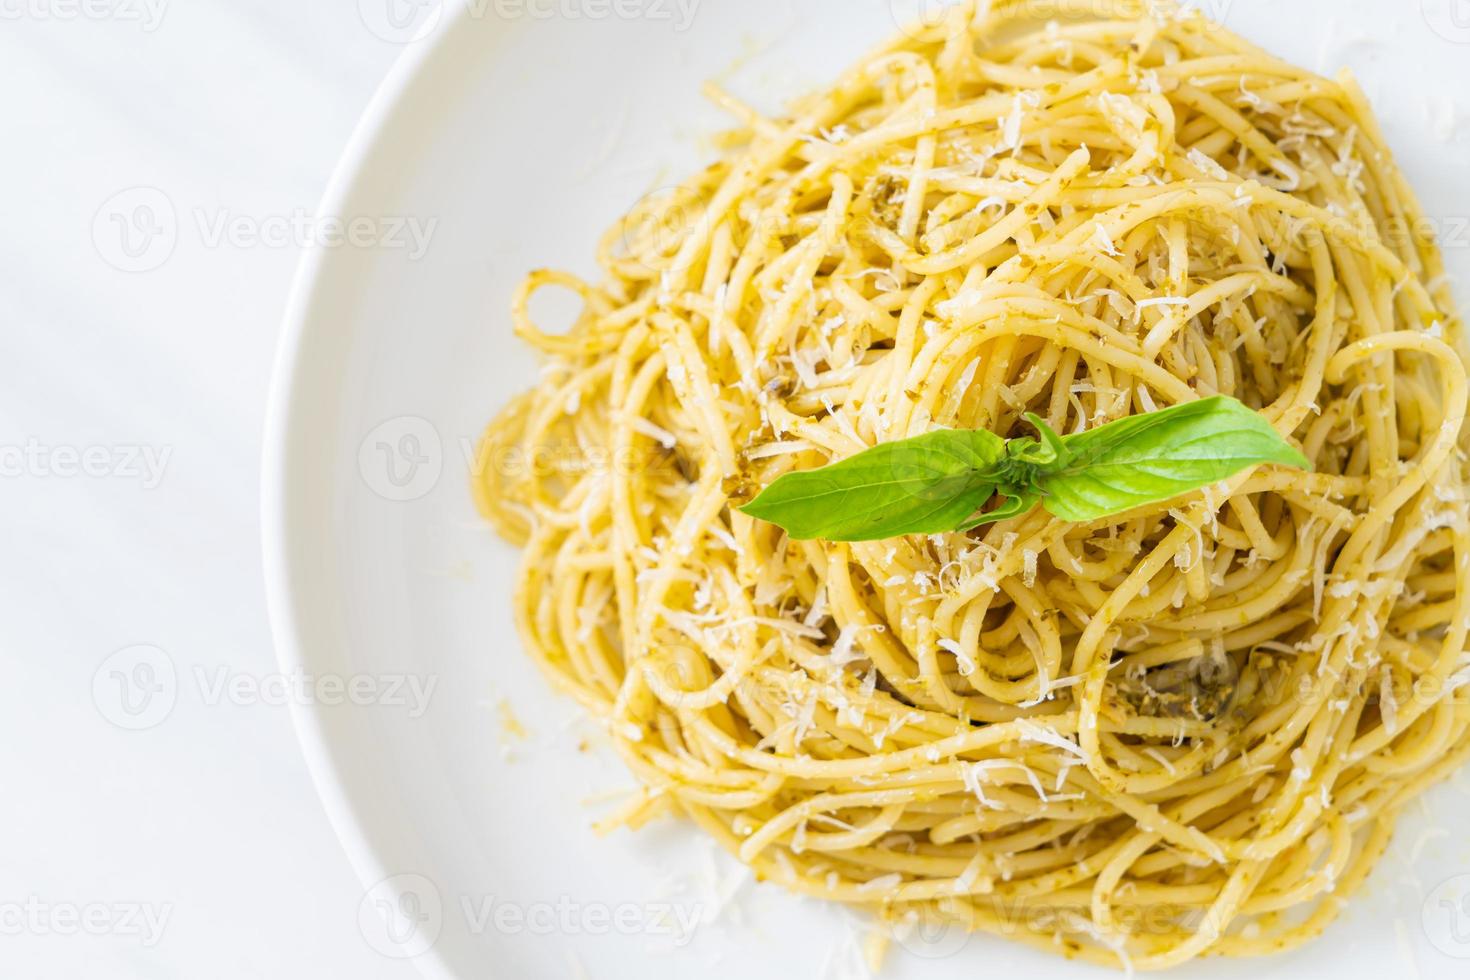 pasta spaghetti al pesto - cibo vegetariano e stile alimentare italiano foto